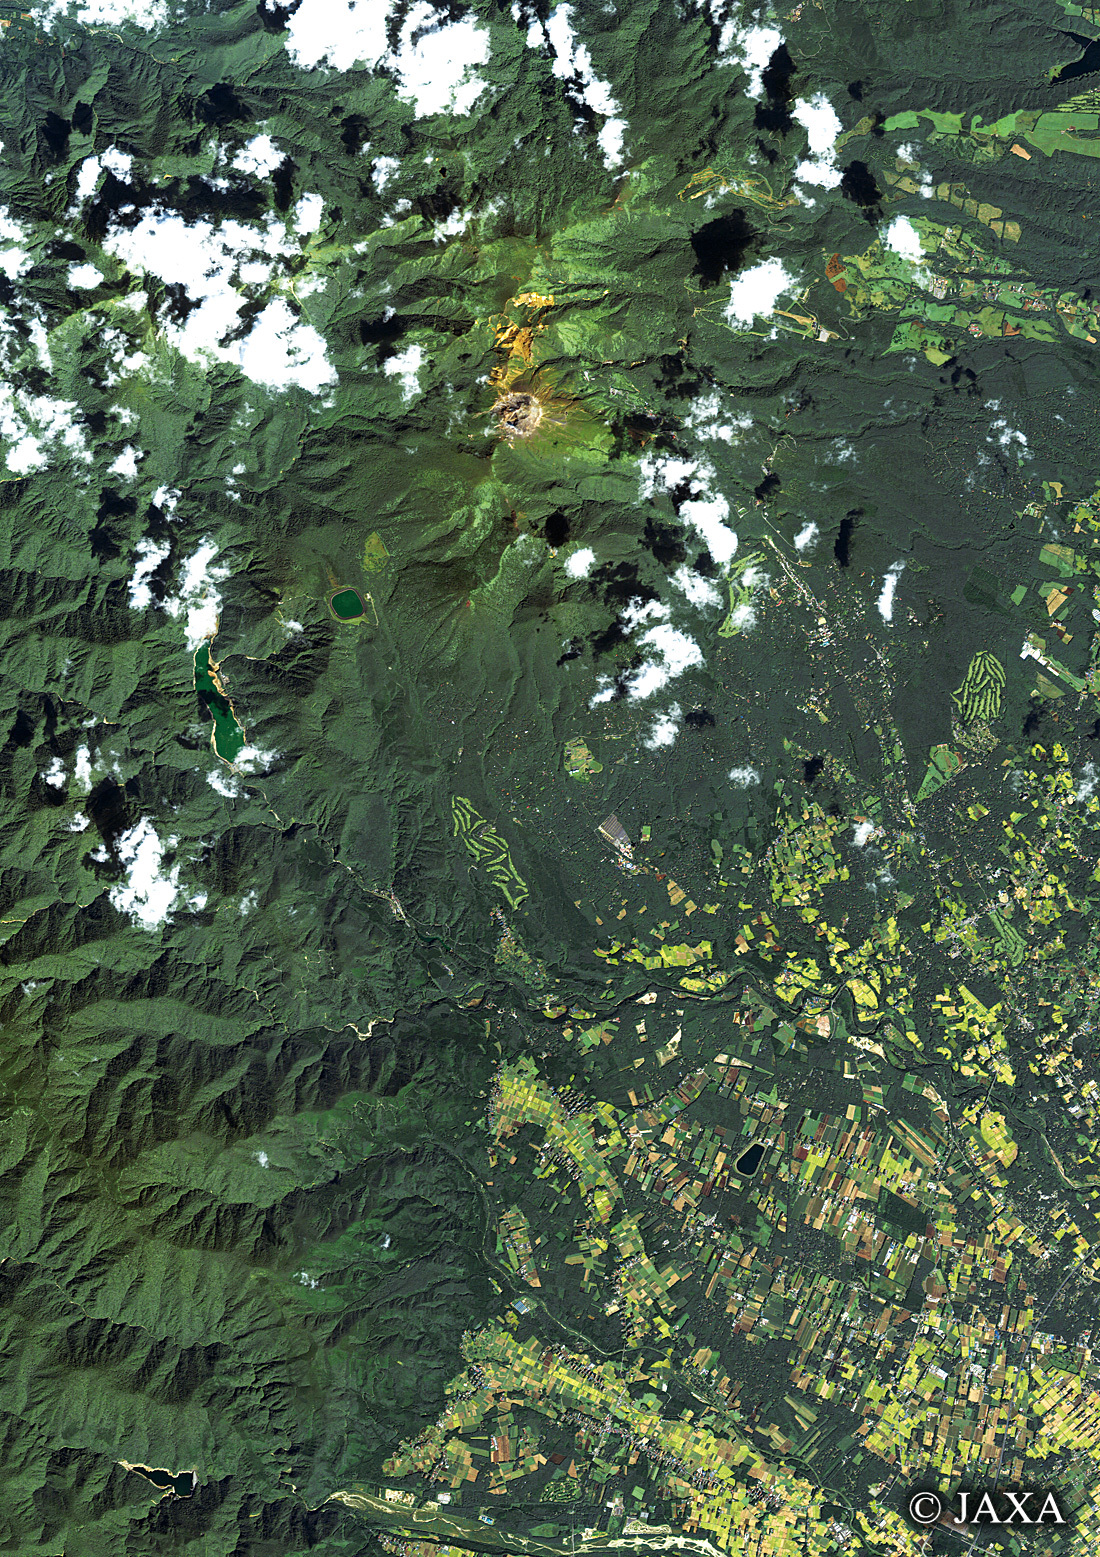 だいちから見た日本の都市 那須:衛星画像